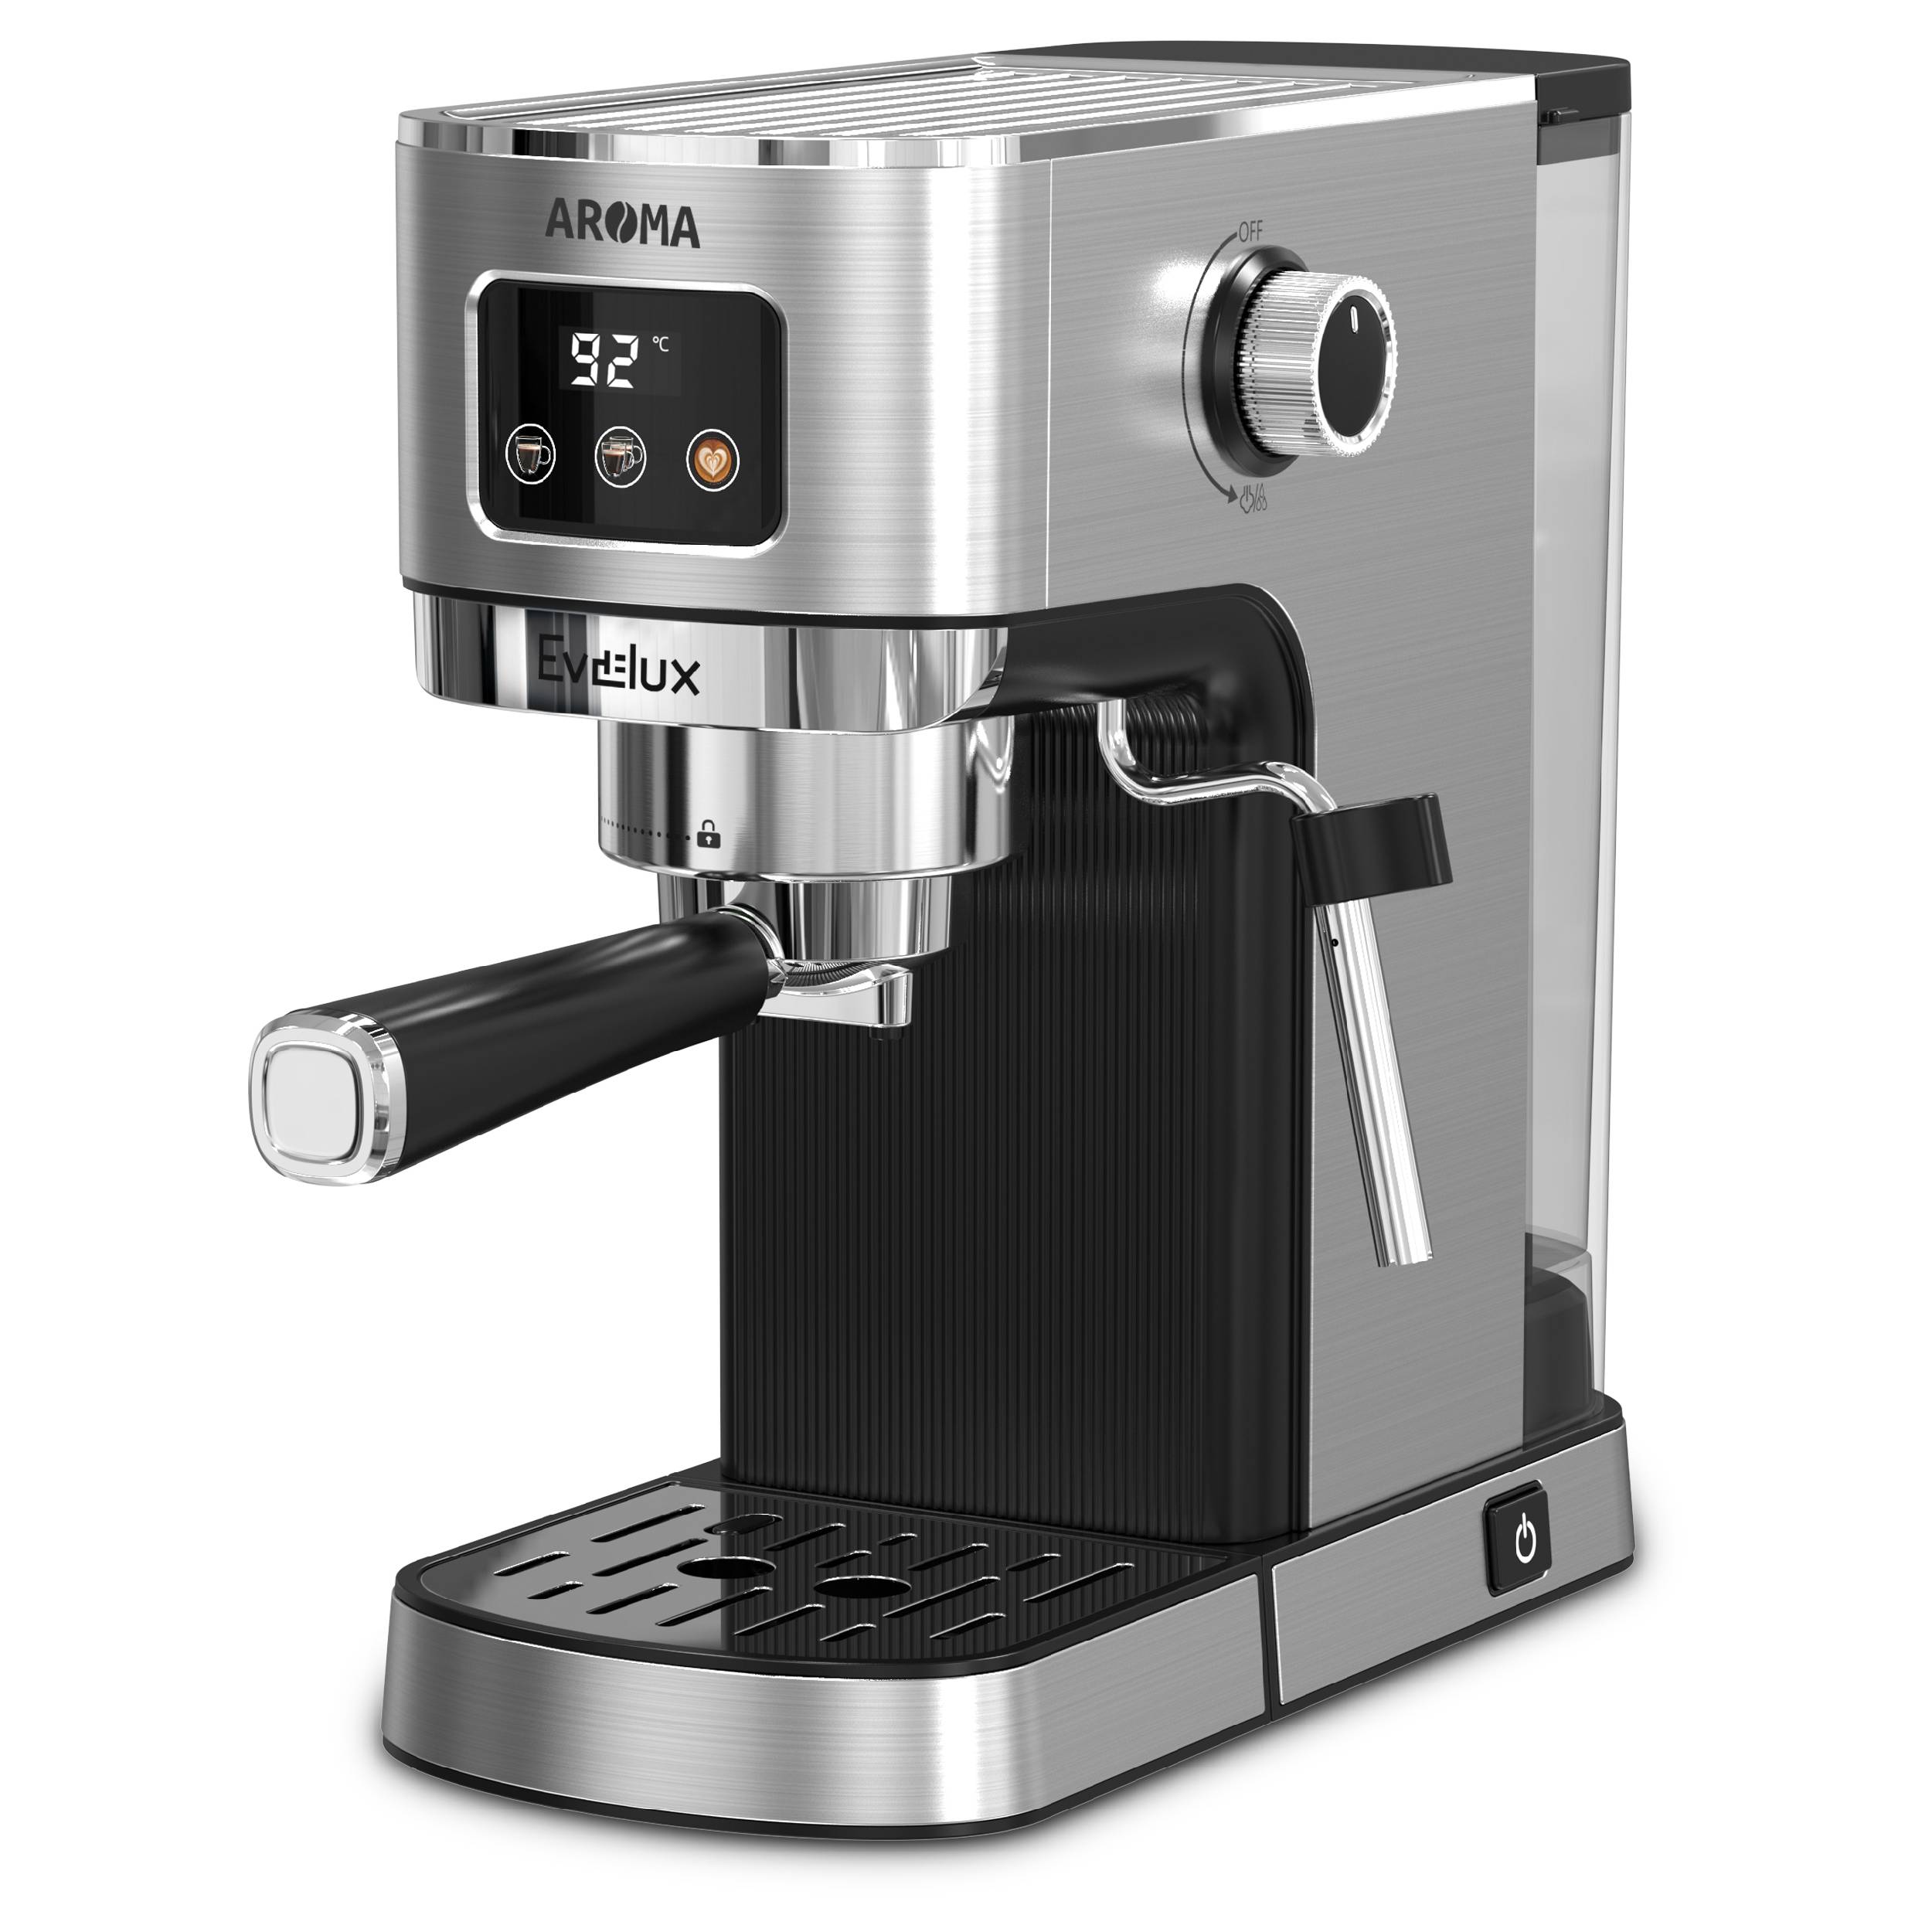 Рожковая кофеварка Evelux ECM 1009 Aroma серебристый, серый рожковая кофеварка vitek vt 8471 серый